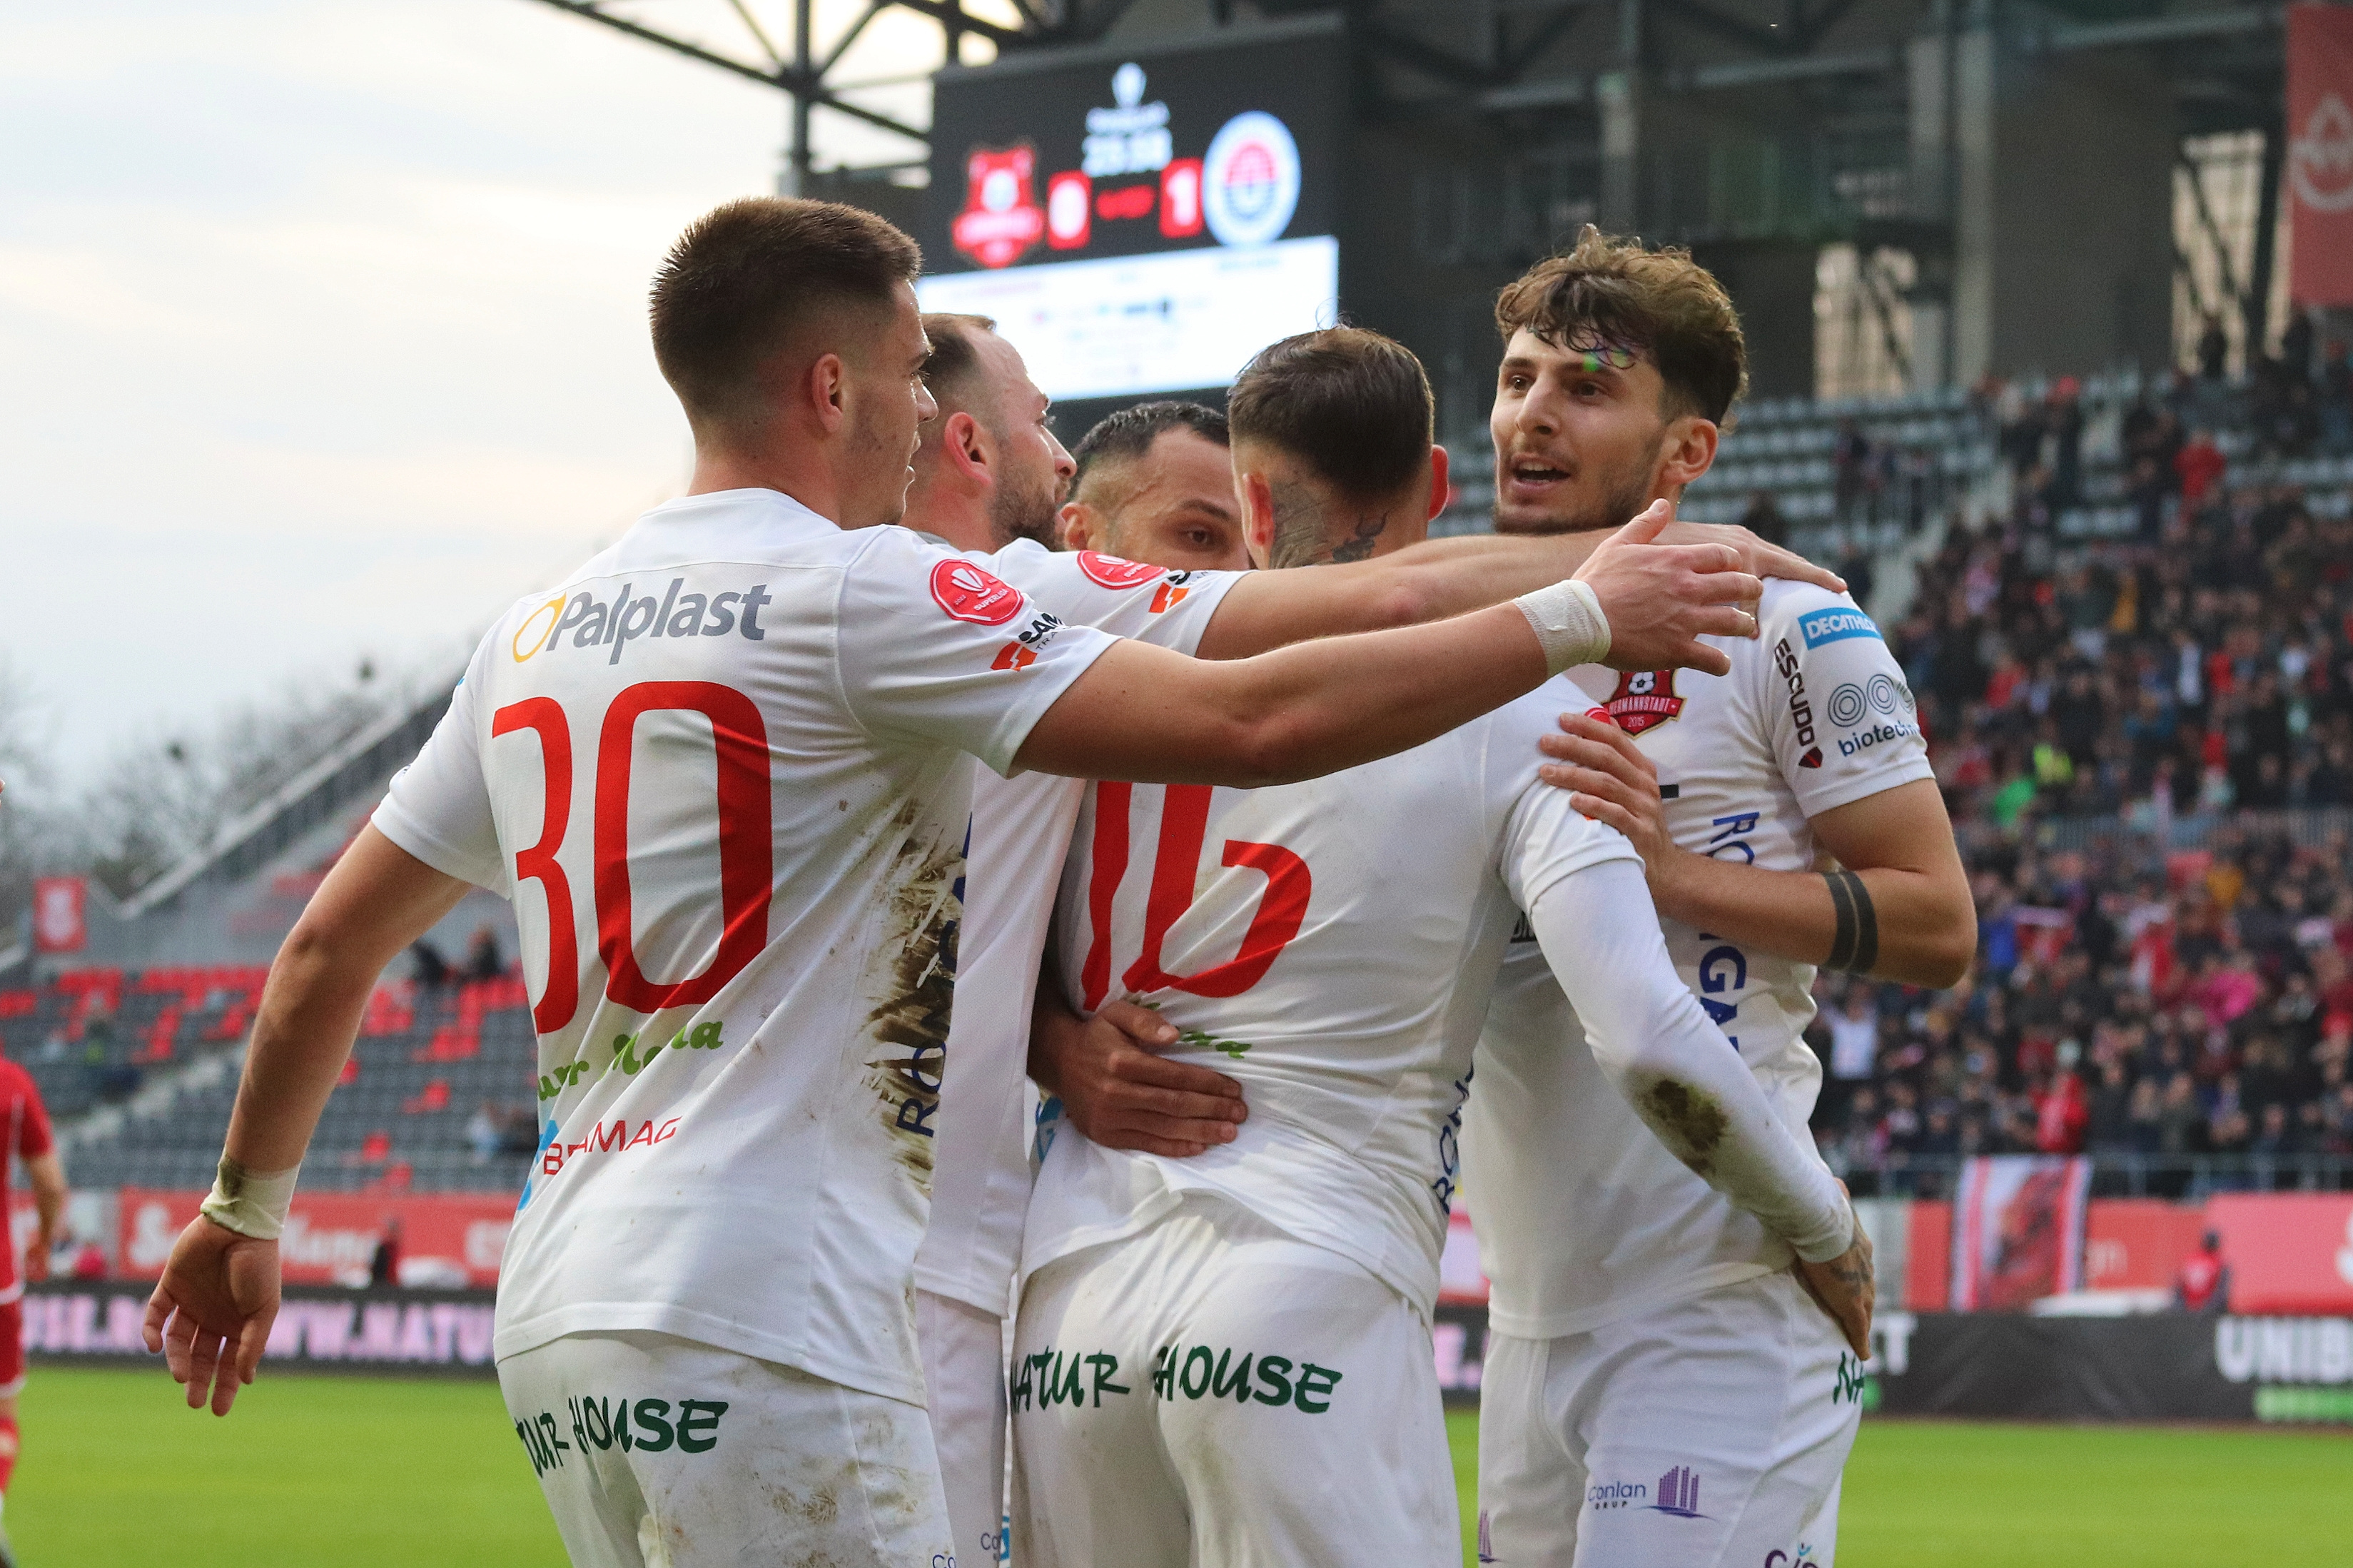 Hermannstadt - ”U” Cluj 1-0, ACUM, Digi Sport 1. Ianis Stoica deschide scorul. Erori în apărarea oaspeților